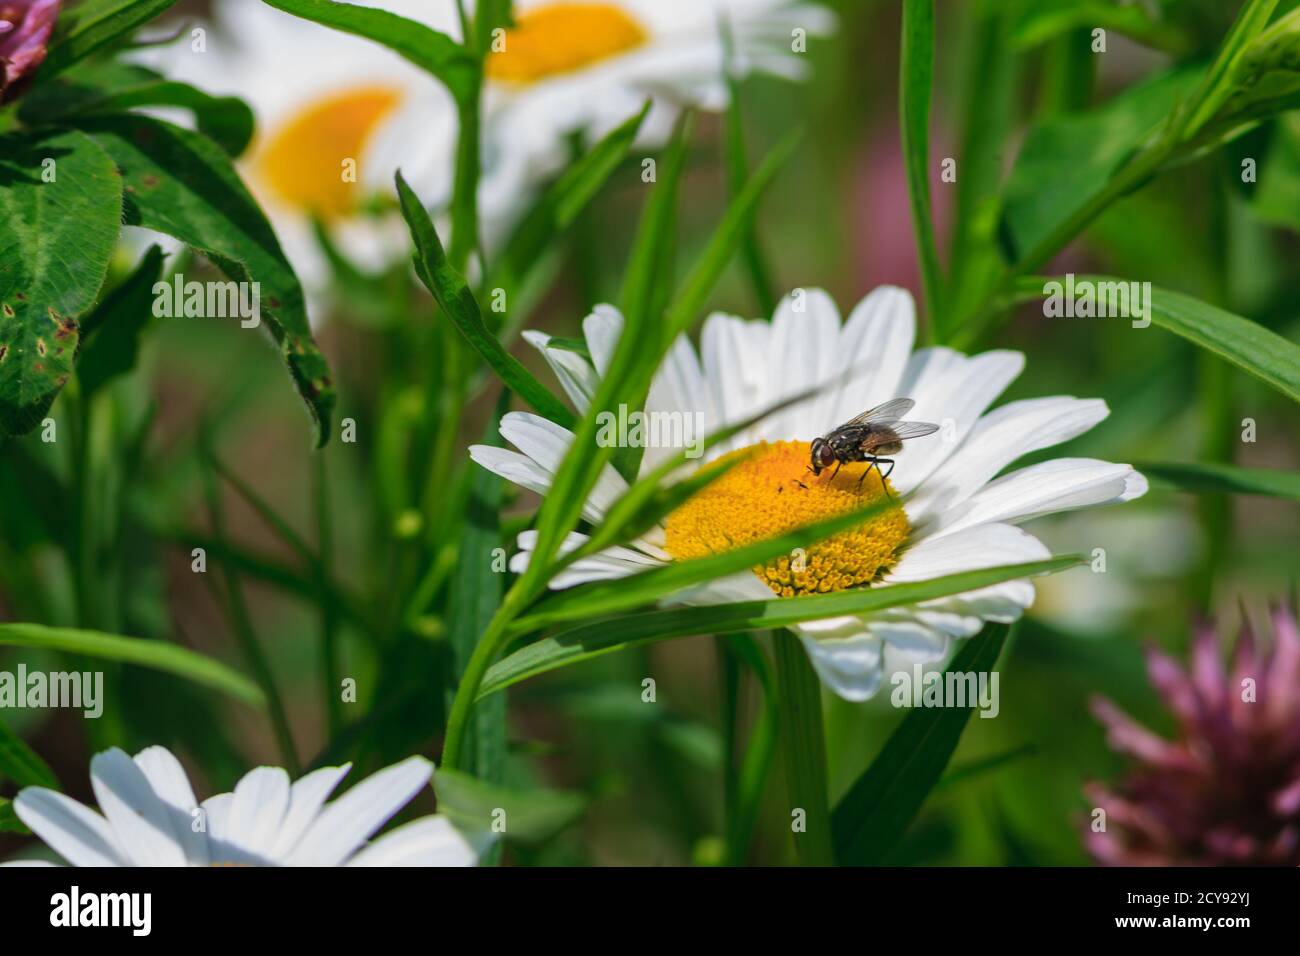 A fly on a daisy Stock Photo